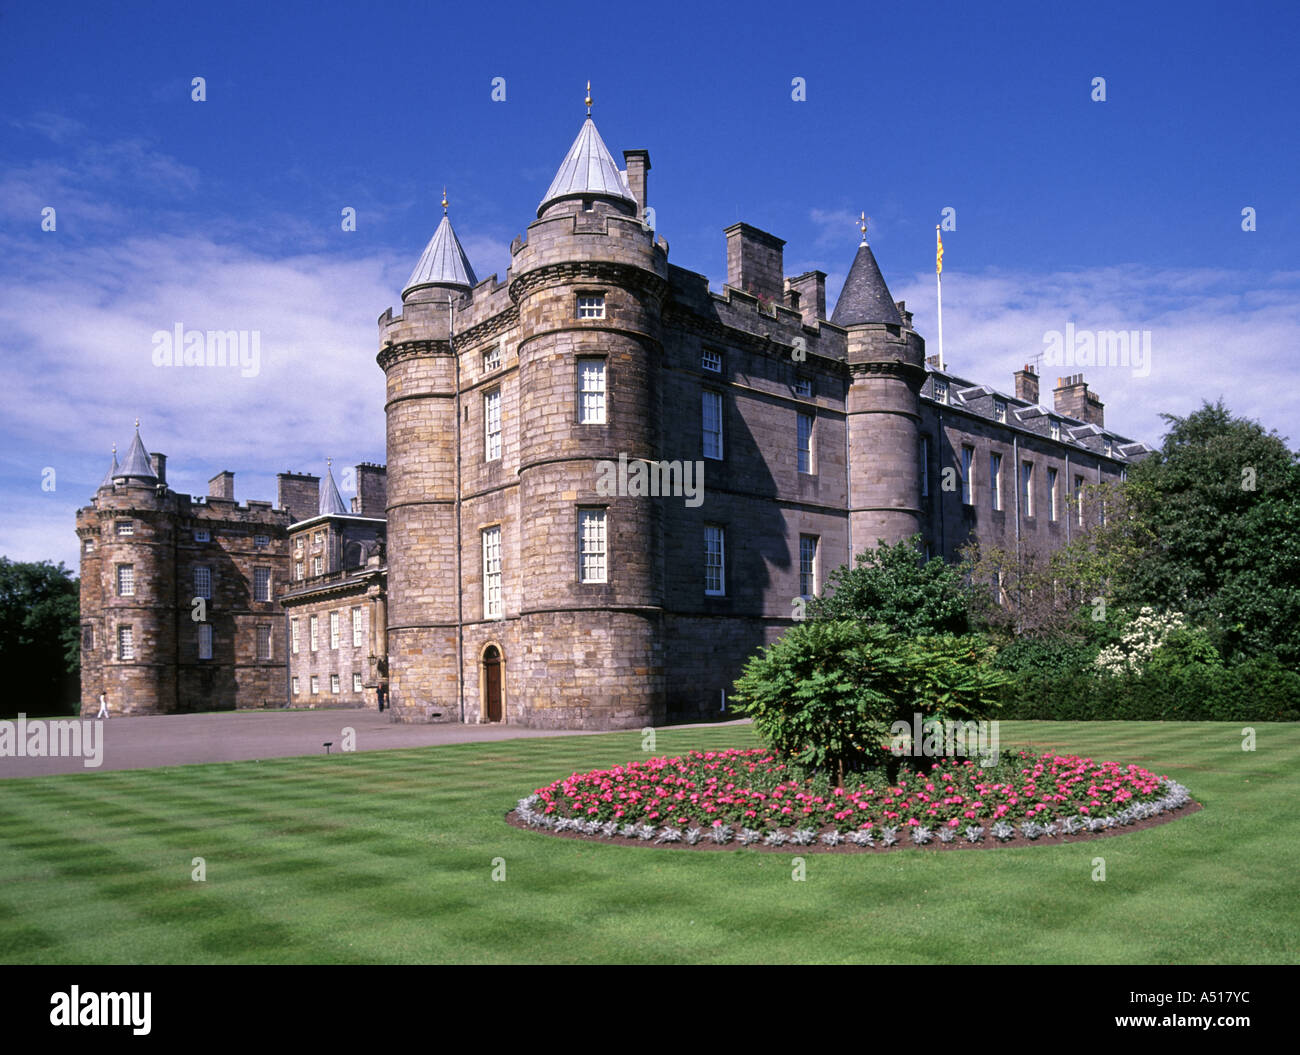 Blumen und Rasen Streifen an der Vorderseite des schottischen Holyrood Palace in Edinburgh UK offizielle Residenz des britischen Monarchen in Schottland Stockfoto